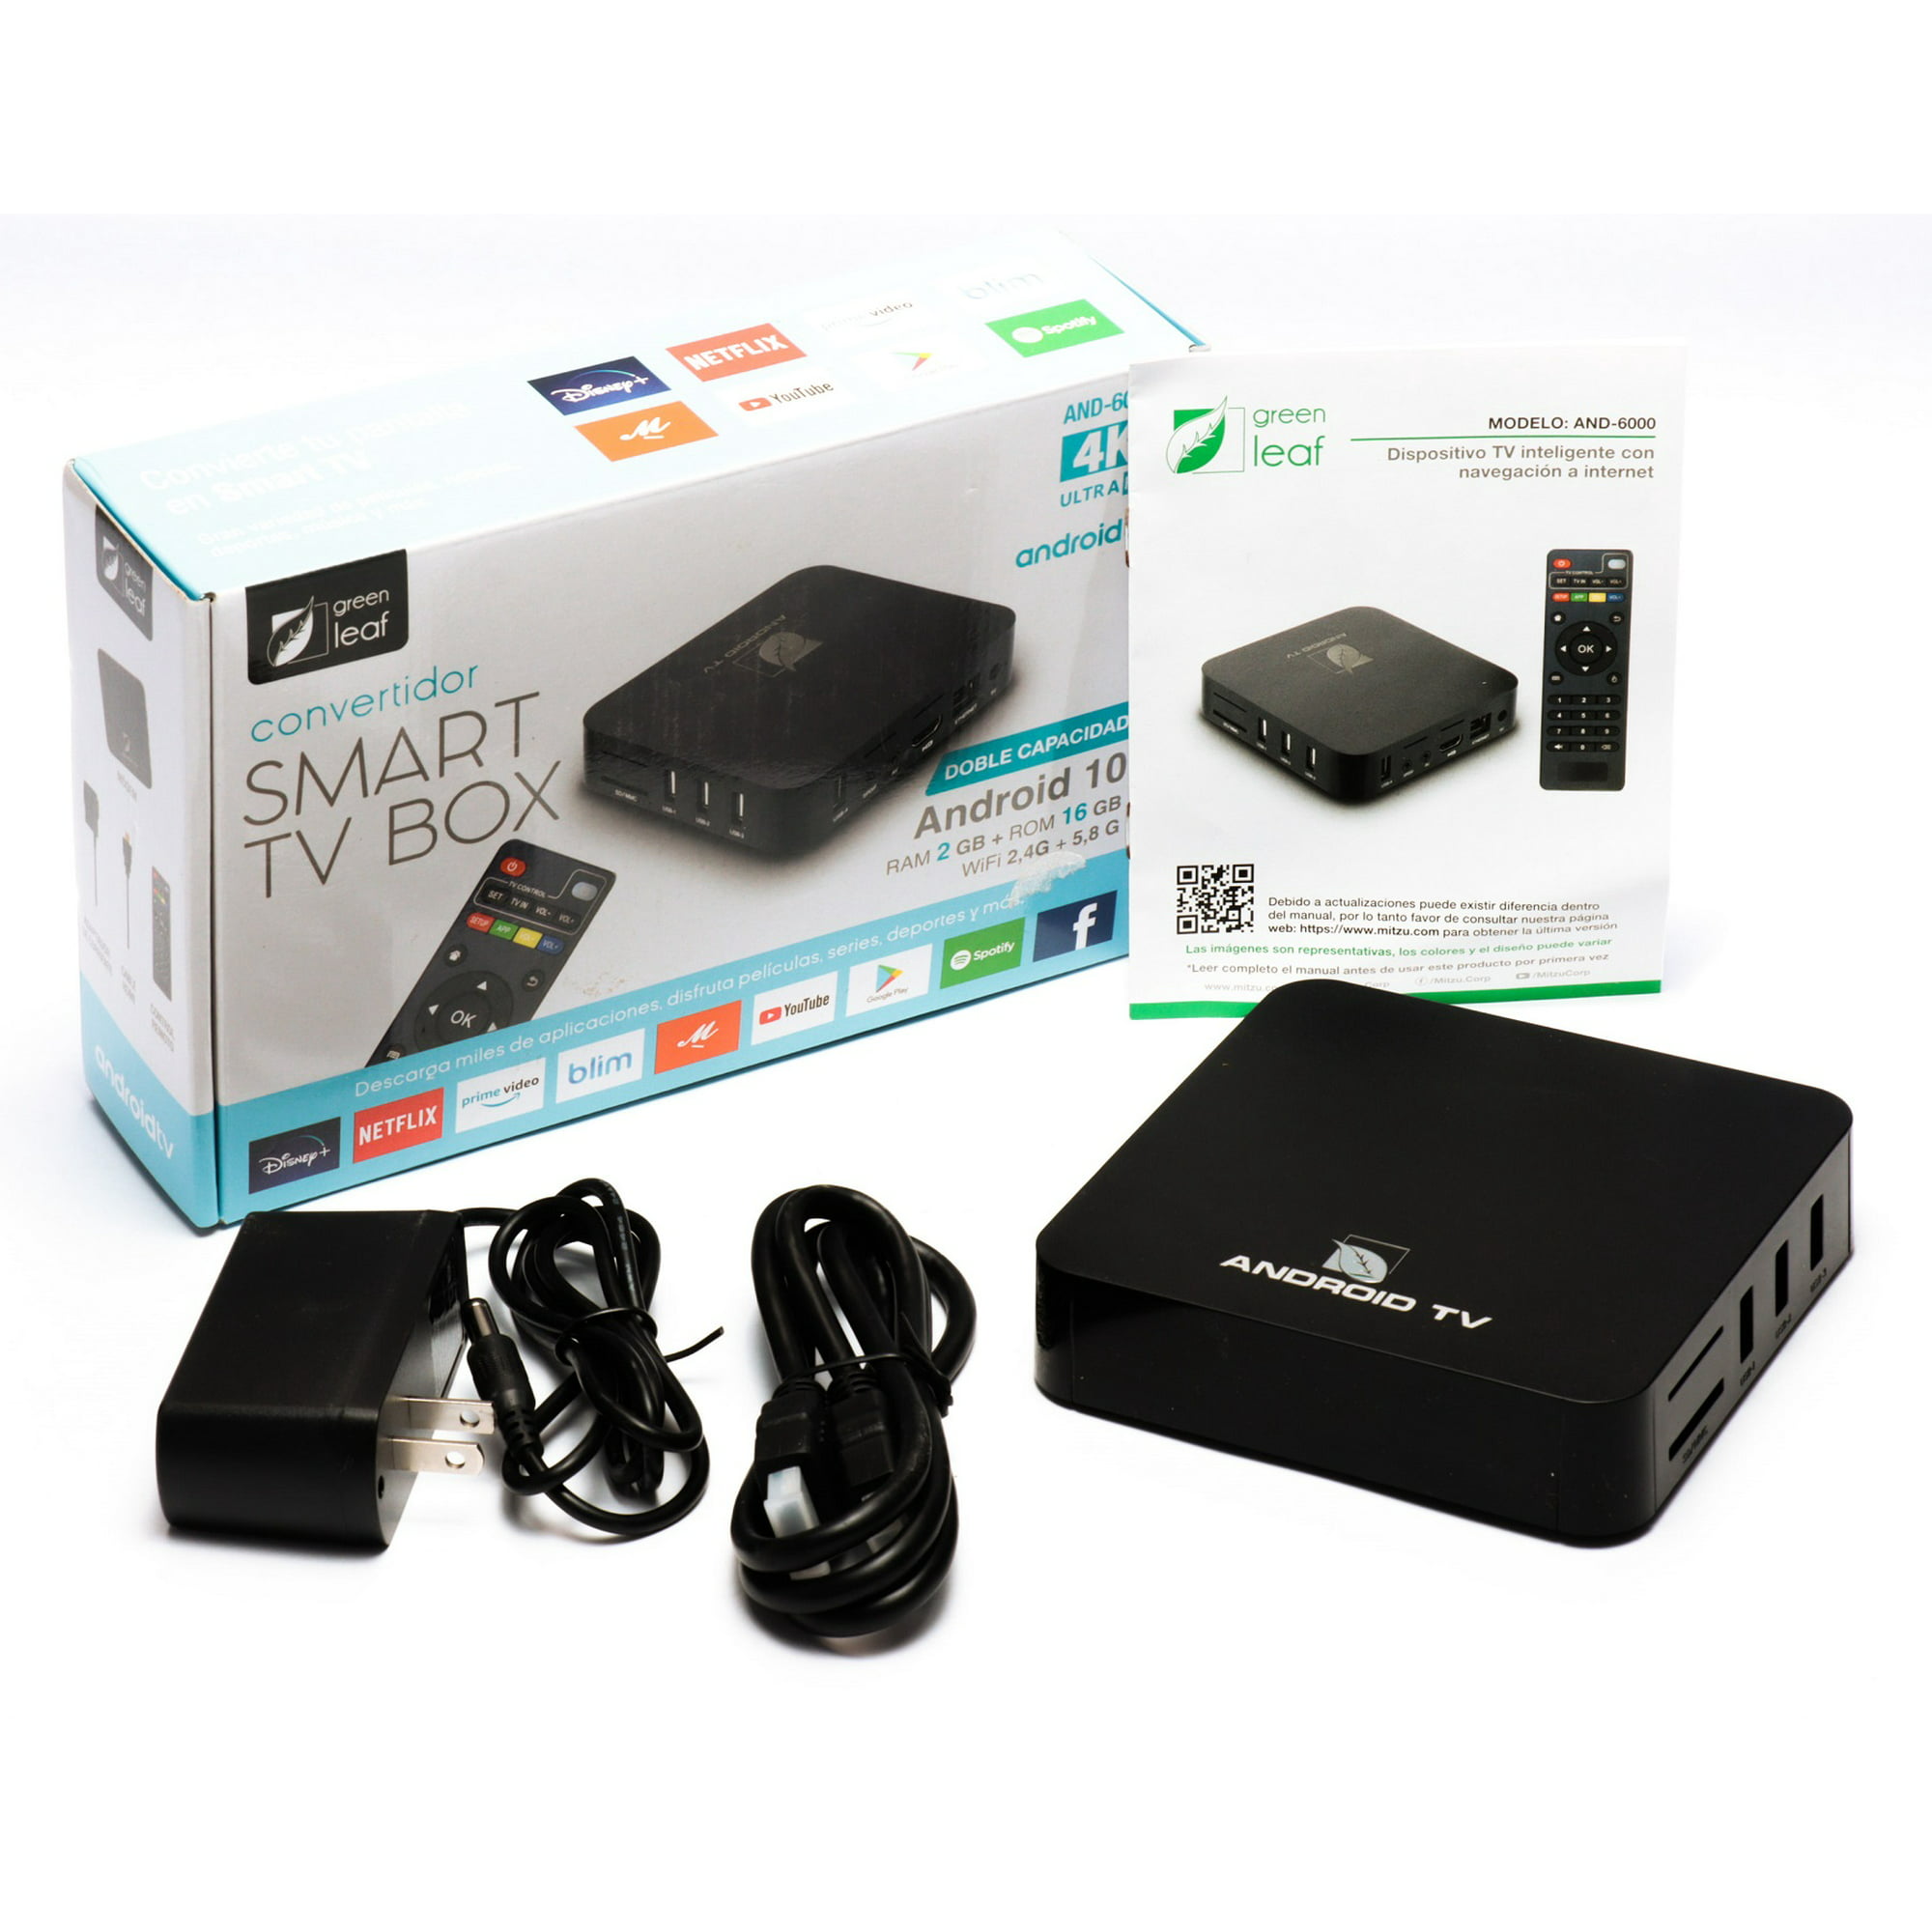 Smart TV Box dispositivo Tv inteligente y Navegación internet WiFi